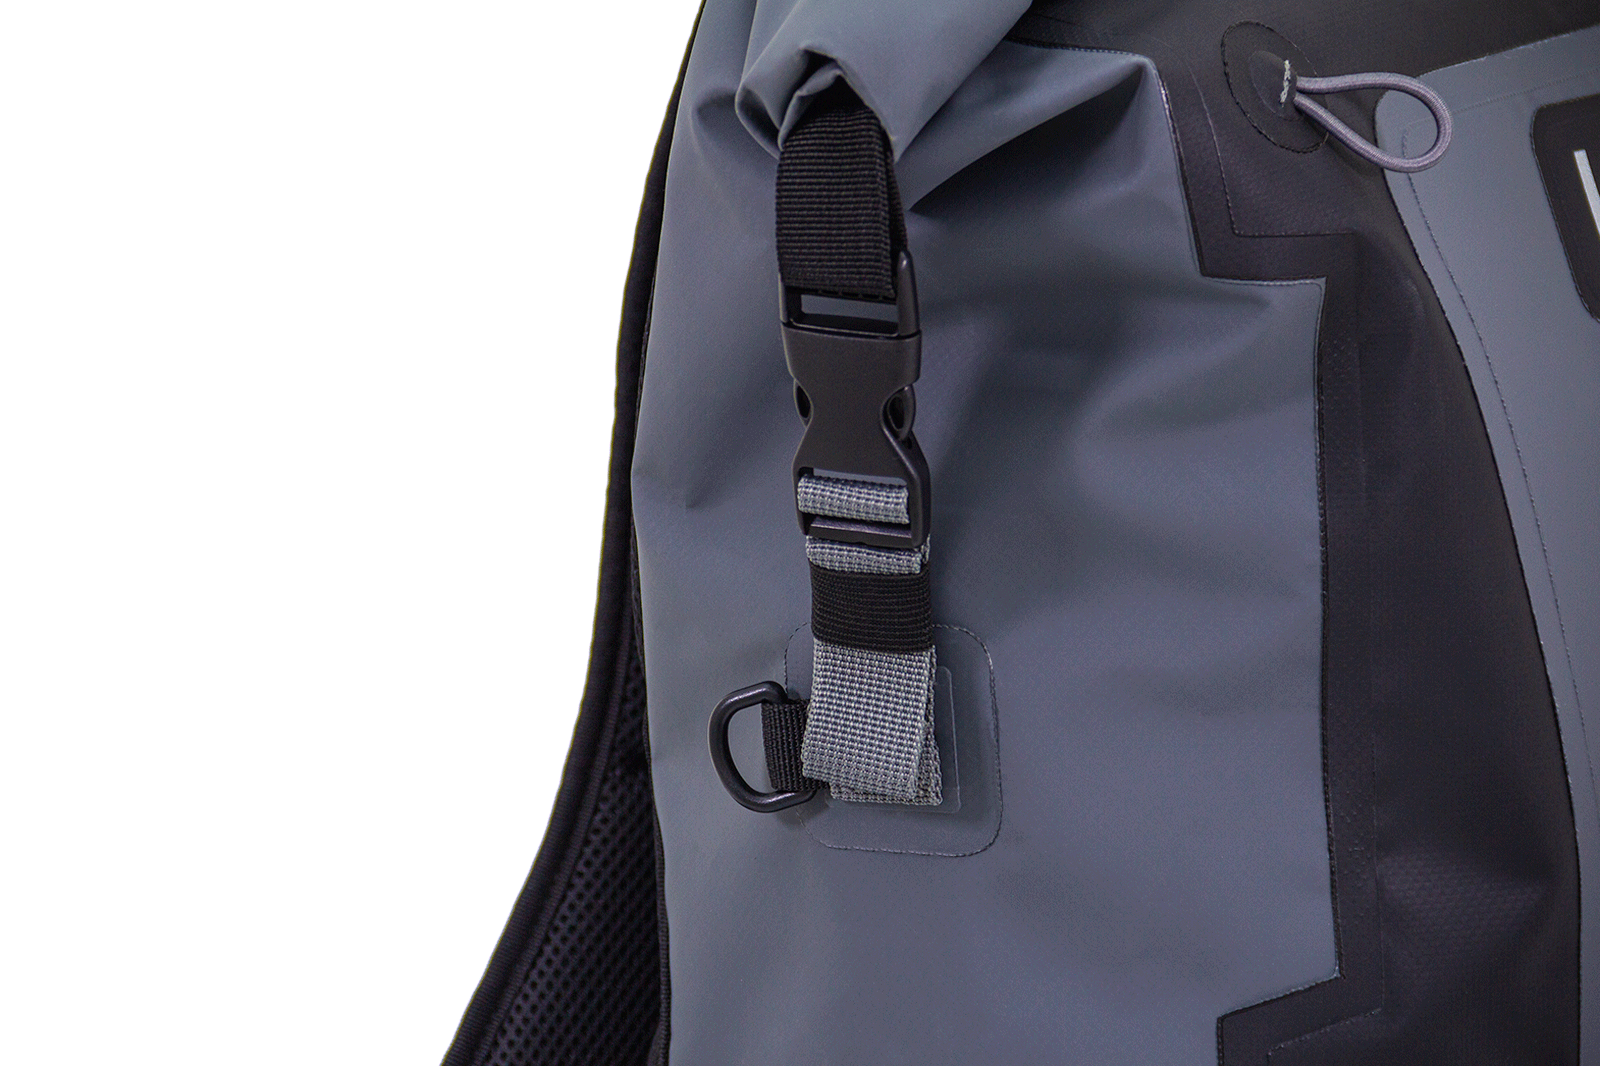 Mochila Impermeable FP DryBag Backpack B25 Negro - URA Moto